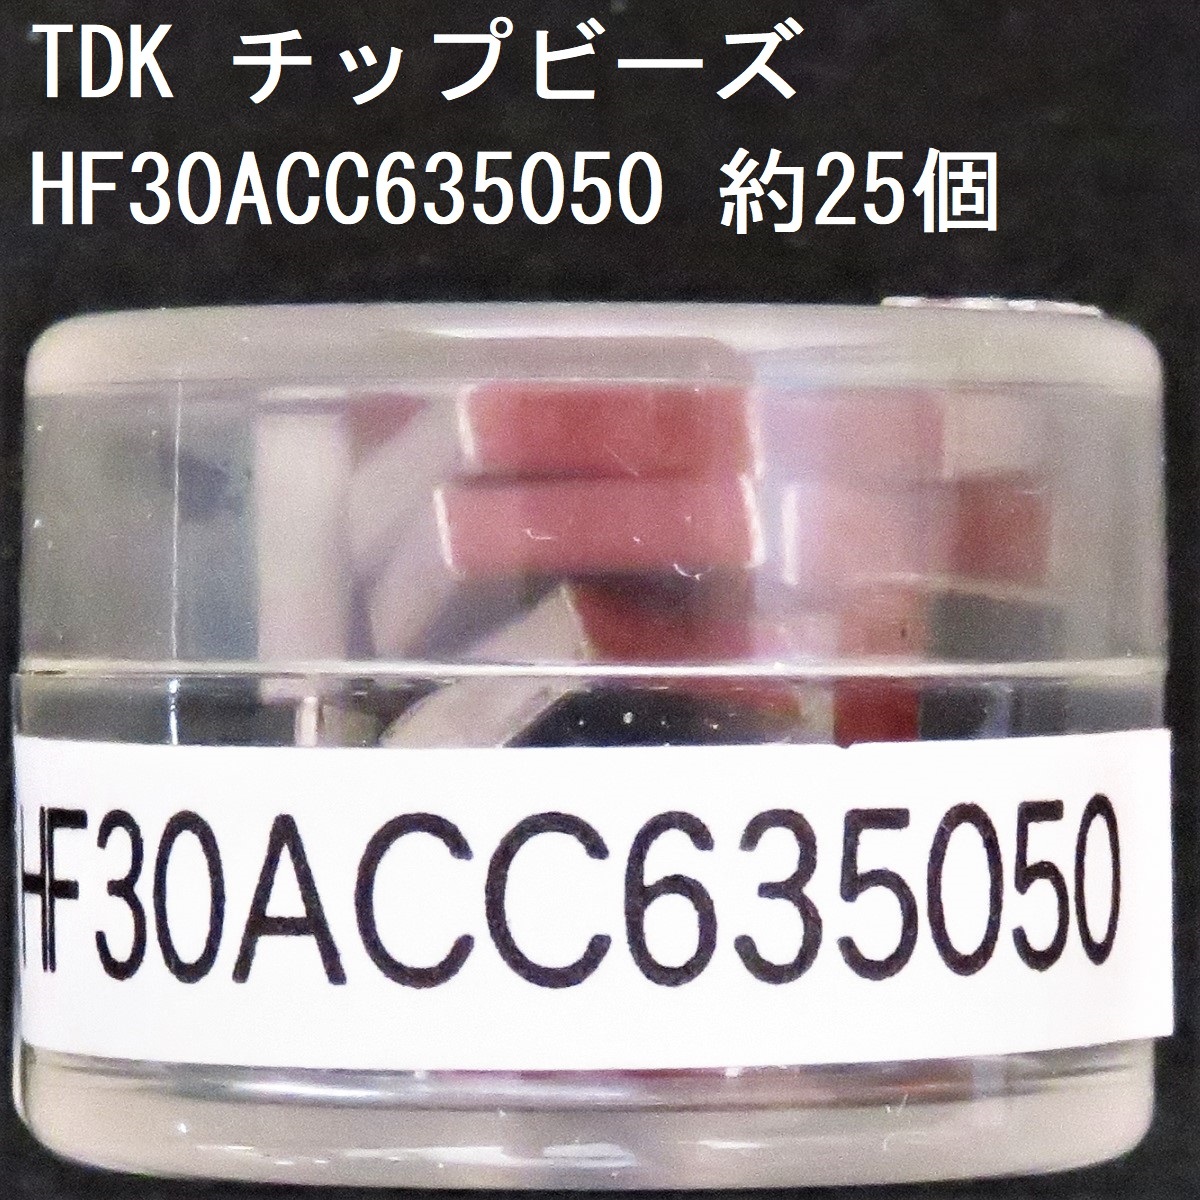  электронный детали TDK источник питания линия для chip бисер HF30ACC635050 примерно 25 шт 750Ω(100MHz) 0.04Ω 3.0A 6350 размер chip in dakta chip emi Phil 